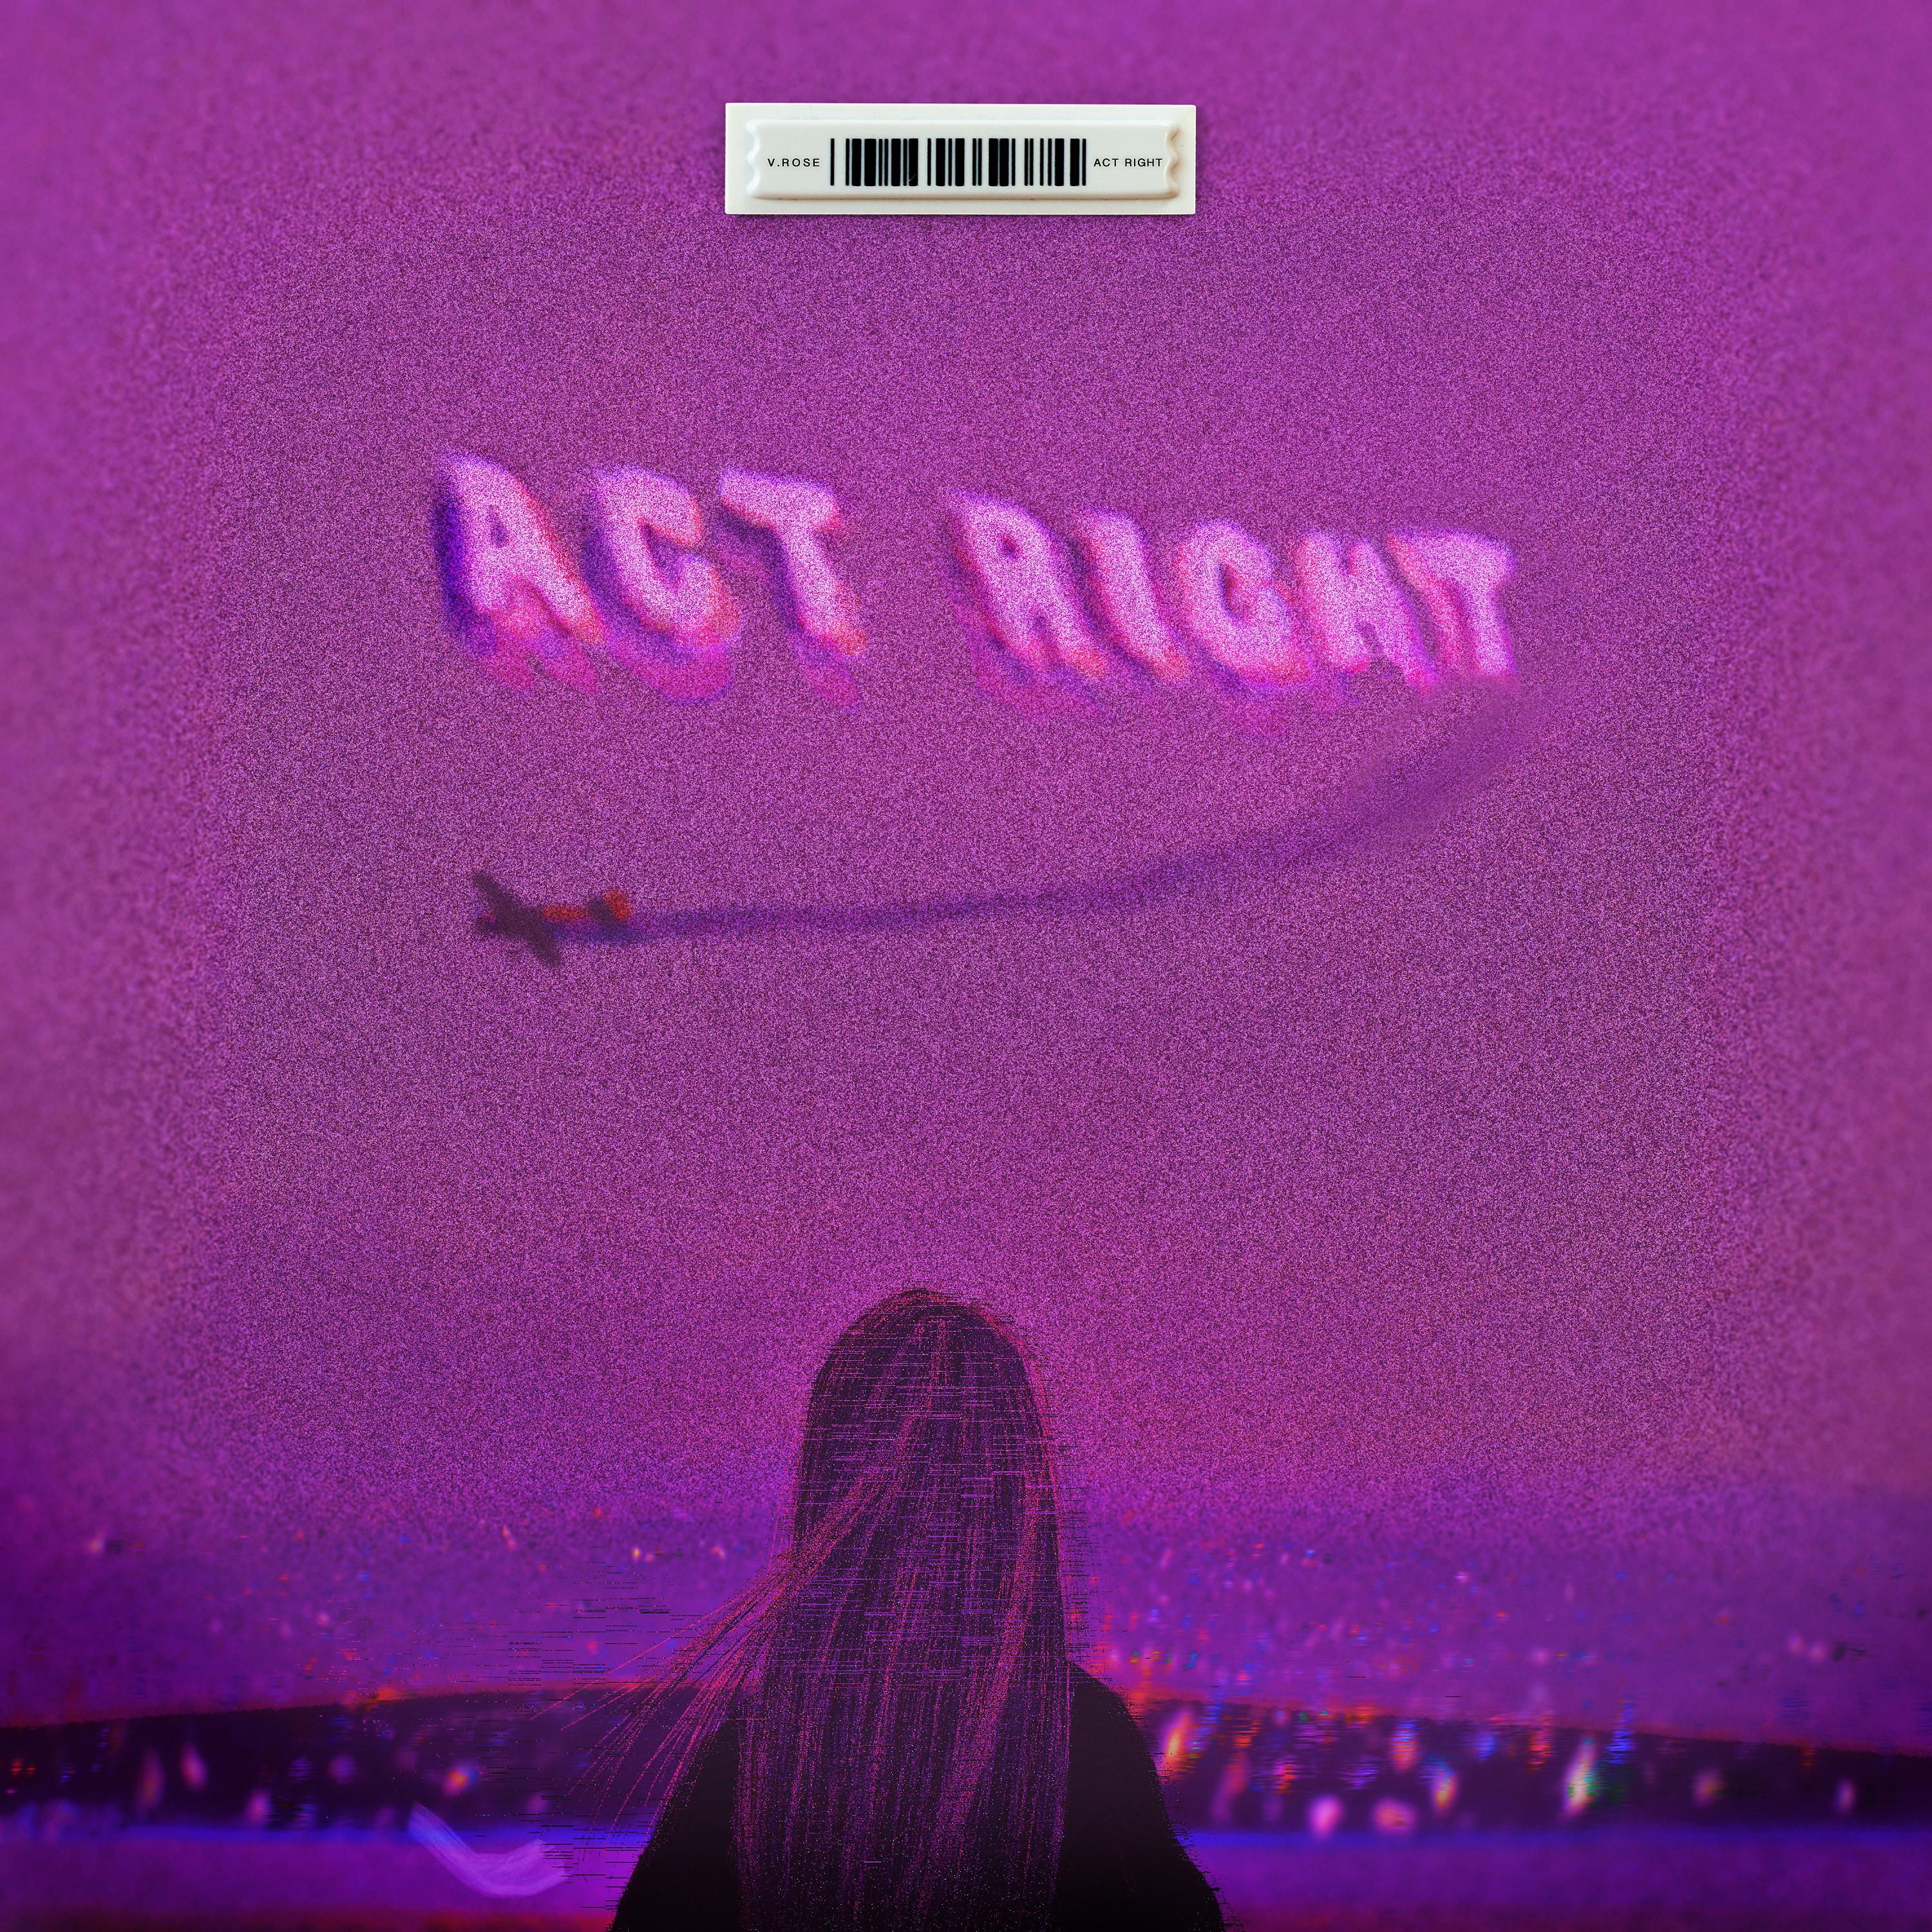 Постер альбома Act Right